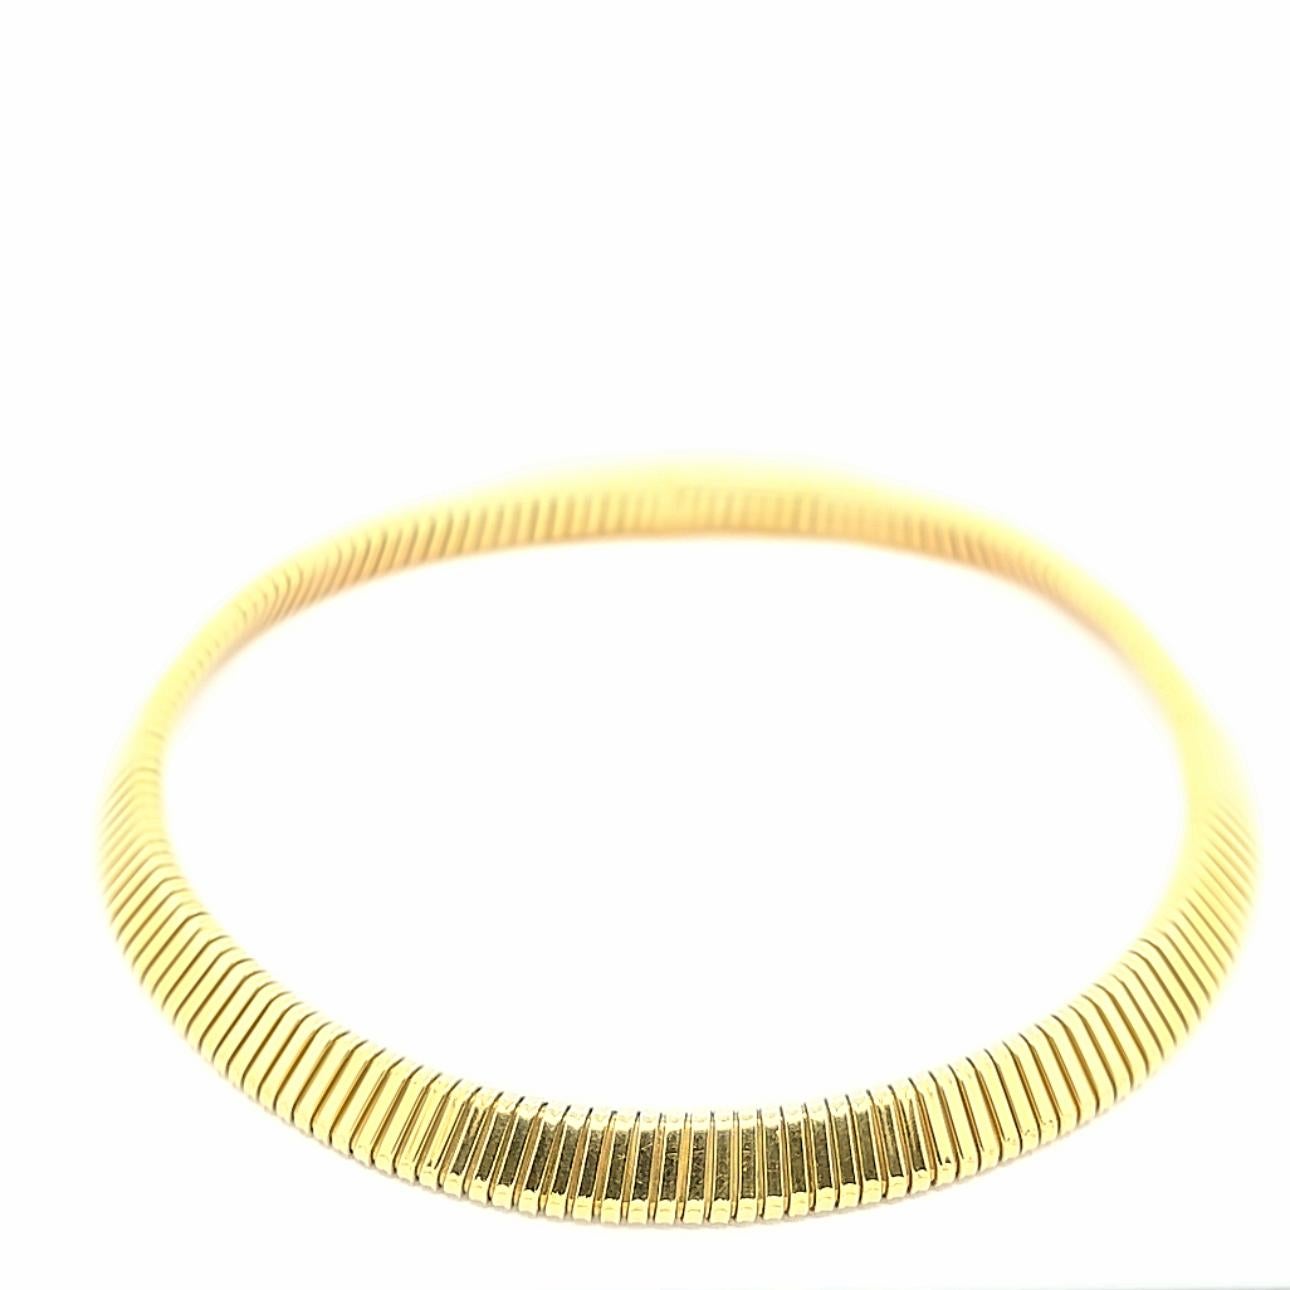 Zeitlose Tubogas-Halskette der berühmten Firma Weingrill aus den 1980er Jahren, die 18 Karat Gelbgold in einer perfekt ausbalancierten Halskette präsentiert. Die glatten Abmessungen und das Gewicht machen dieses Schmuckstück sowohl für den Alltag